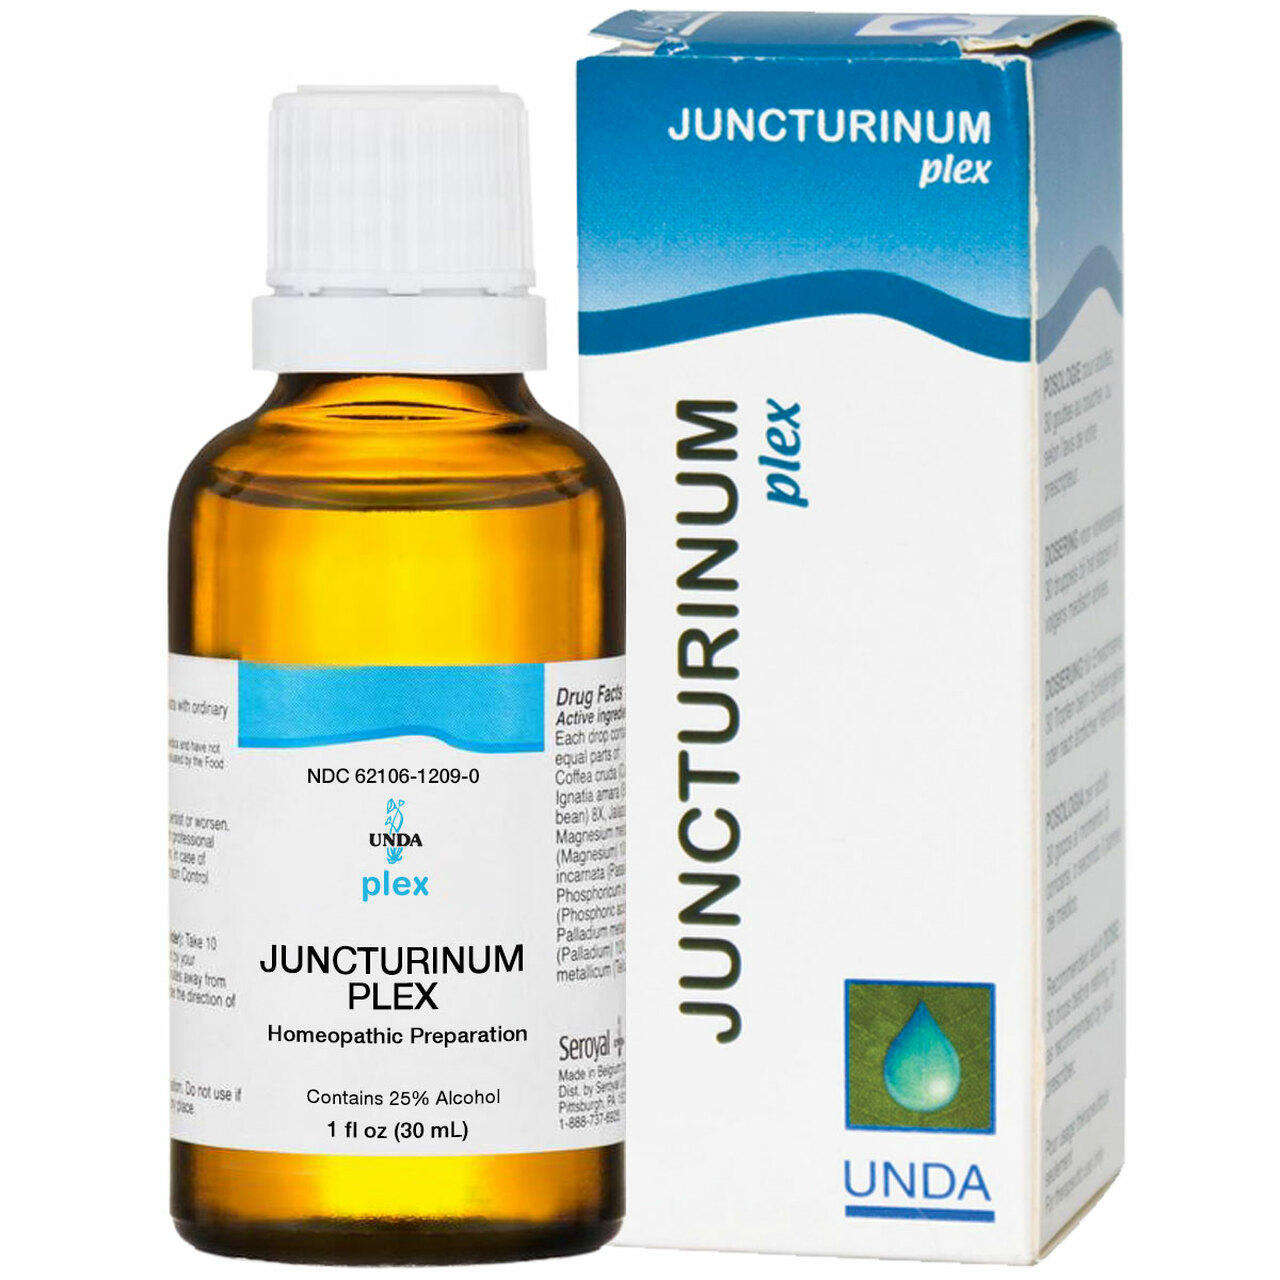 JuncturinumPlex